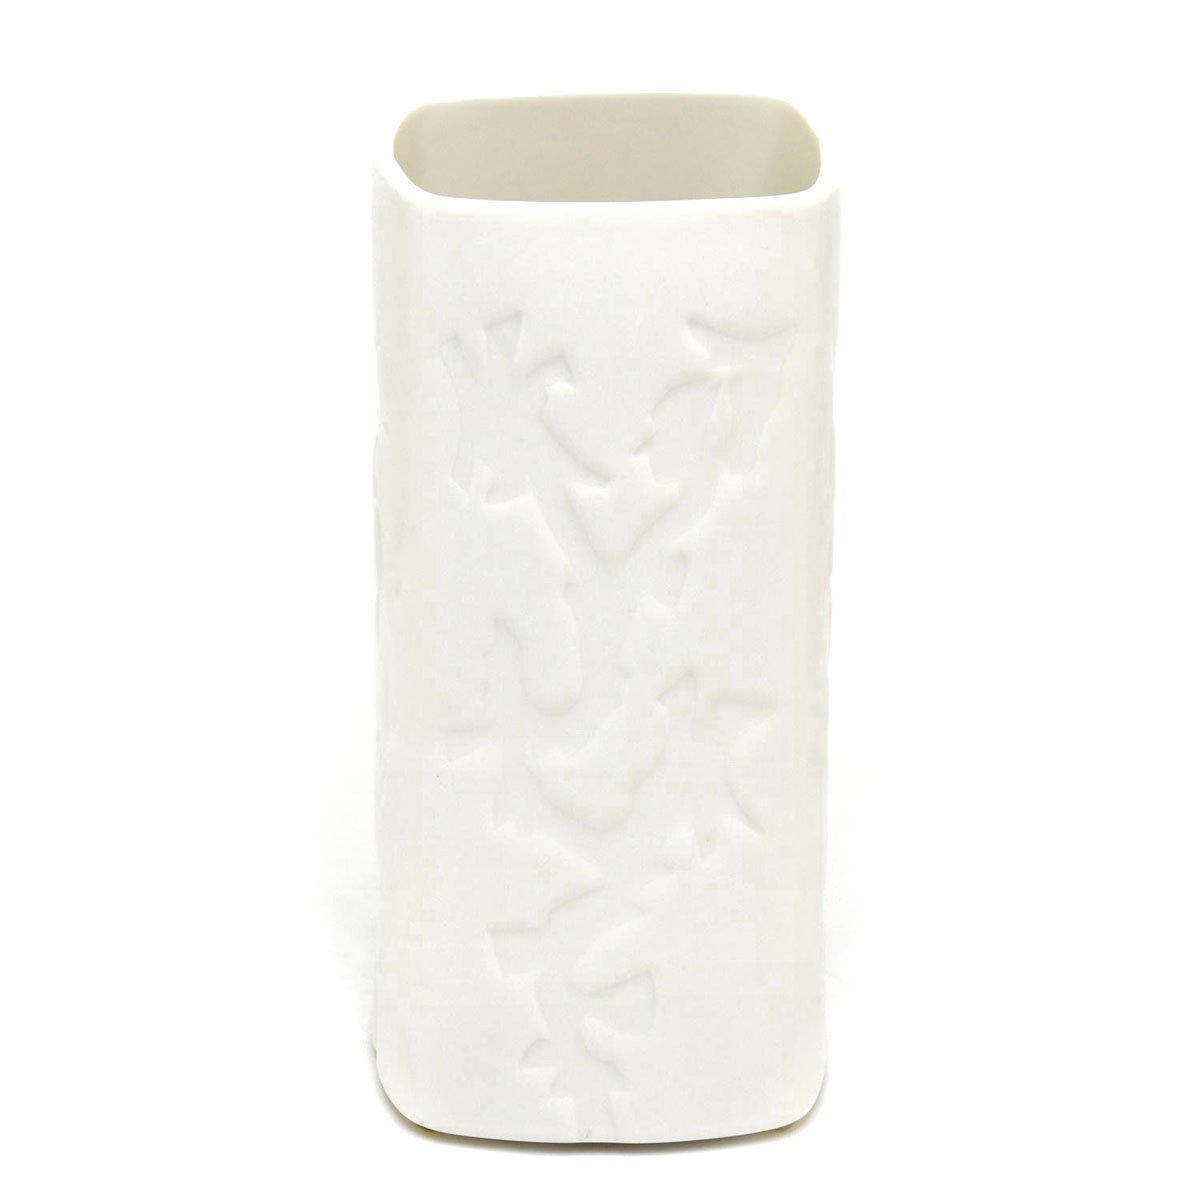 セーブル(Sevres) 花瓶 白磁 フランソワ エティエンヌハジュ 2000年復刻 ハンドメイド 装飾花瓶 フランス製 新品